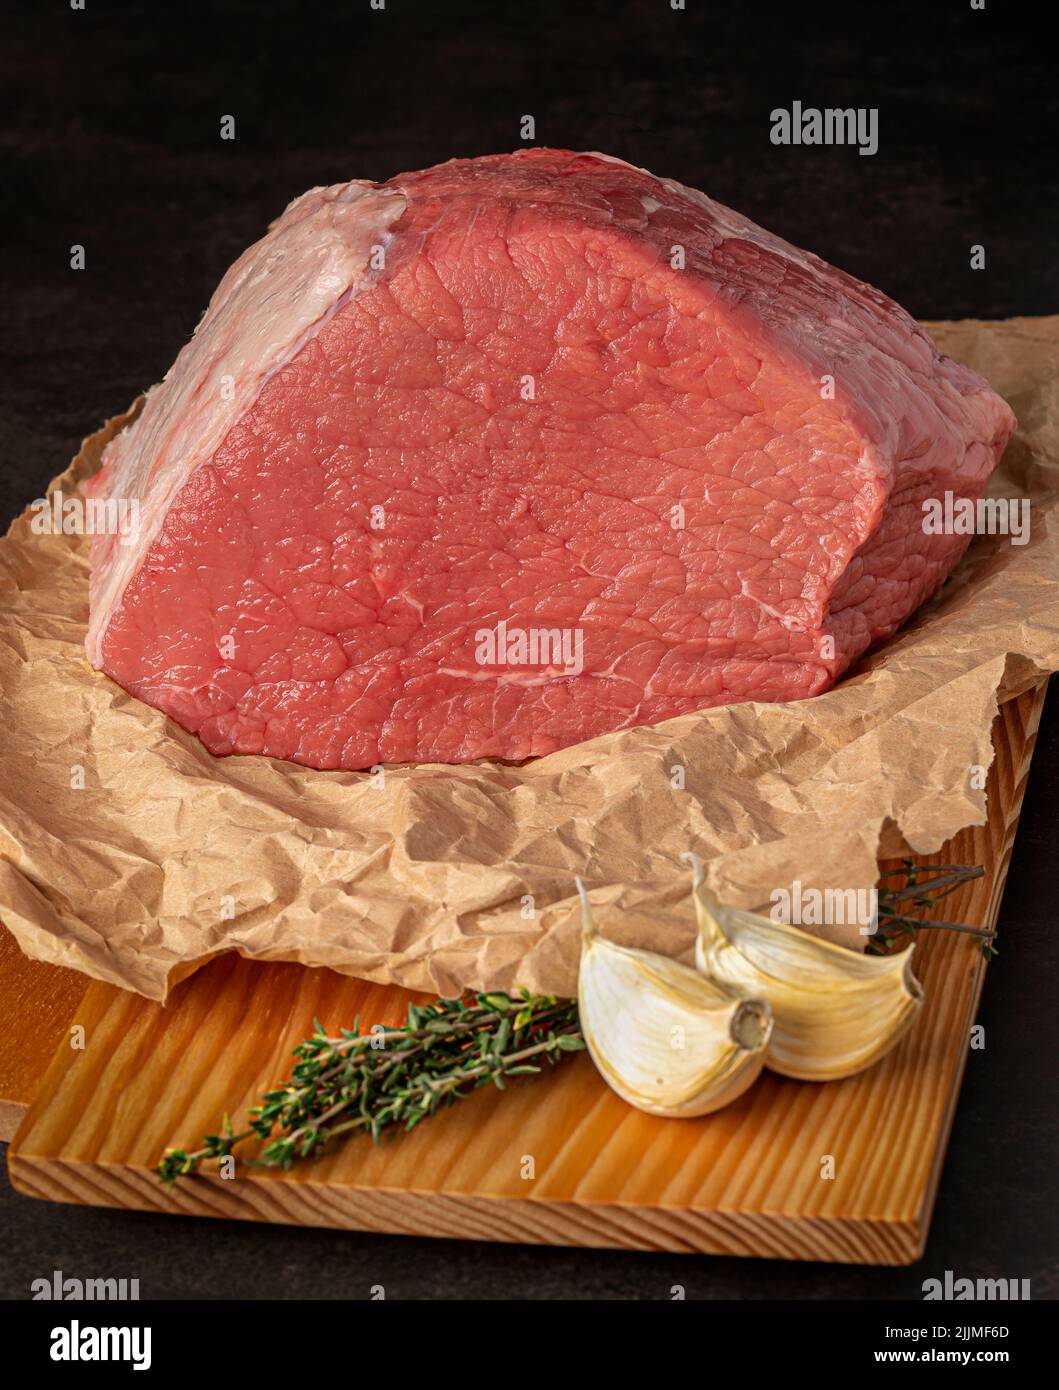 Food Fotografie von Rindfleisch, rohem Steak, Metzger, Filet, Fleisch, Holzbrett, Knoblauch, Kräuter Stockfoto